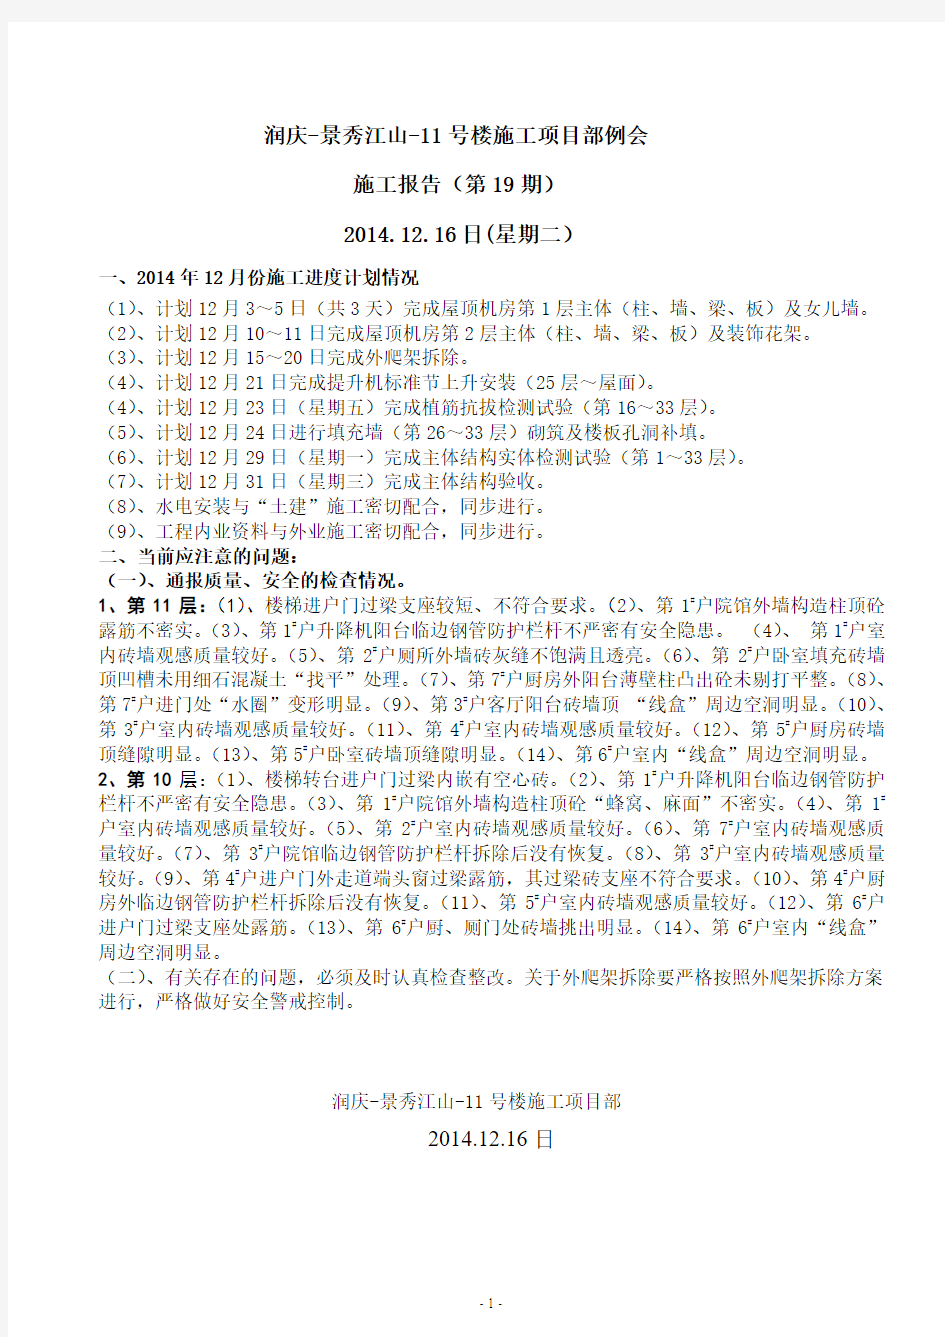 2014.12.16日(星期二)：润庆-景秀江山-11号楼施工项目部例会施工报告(第19期)